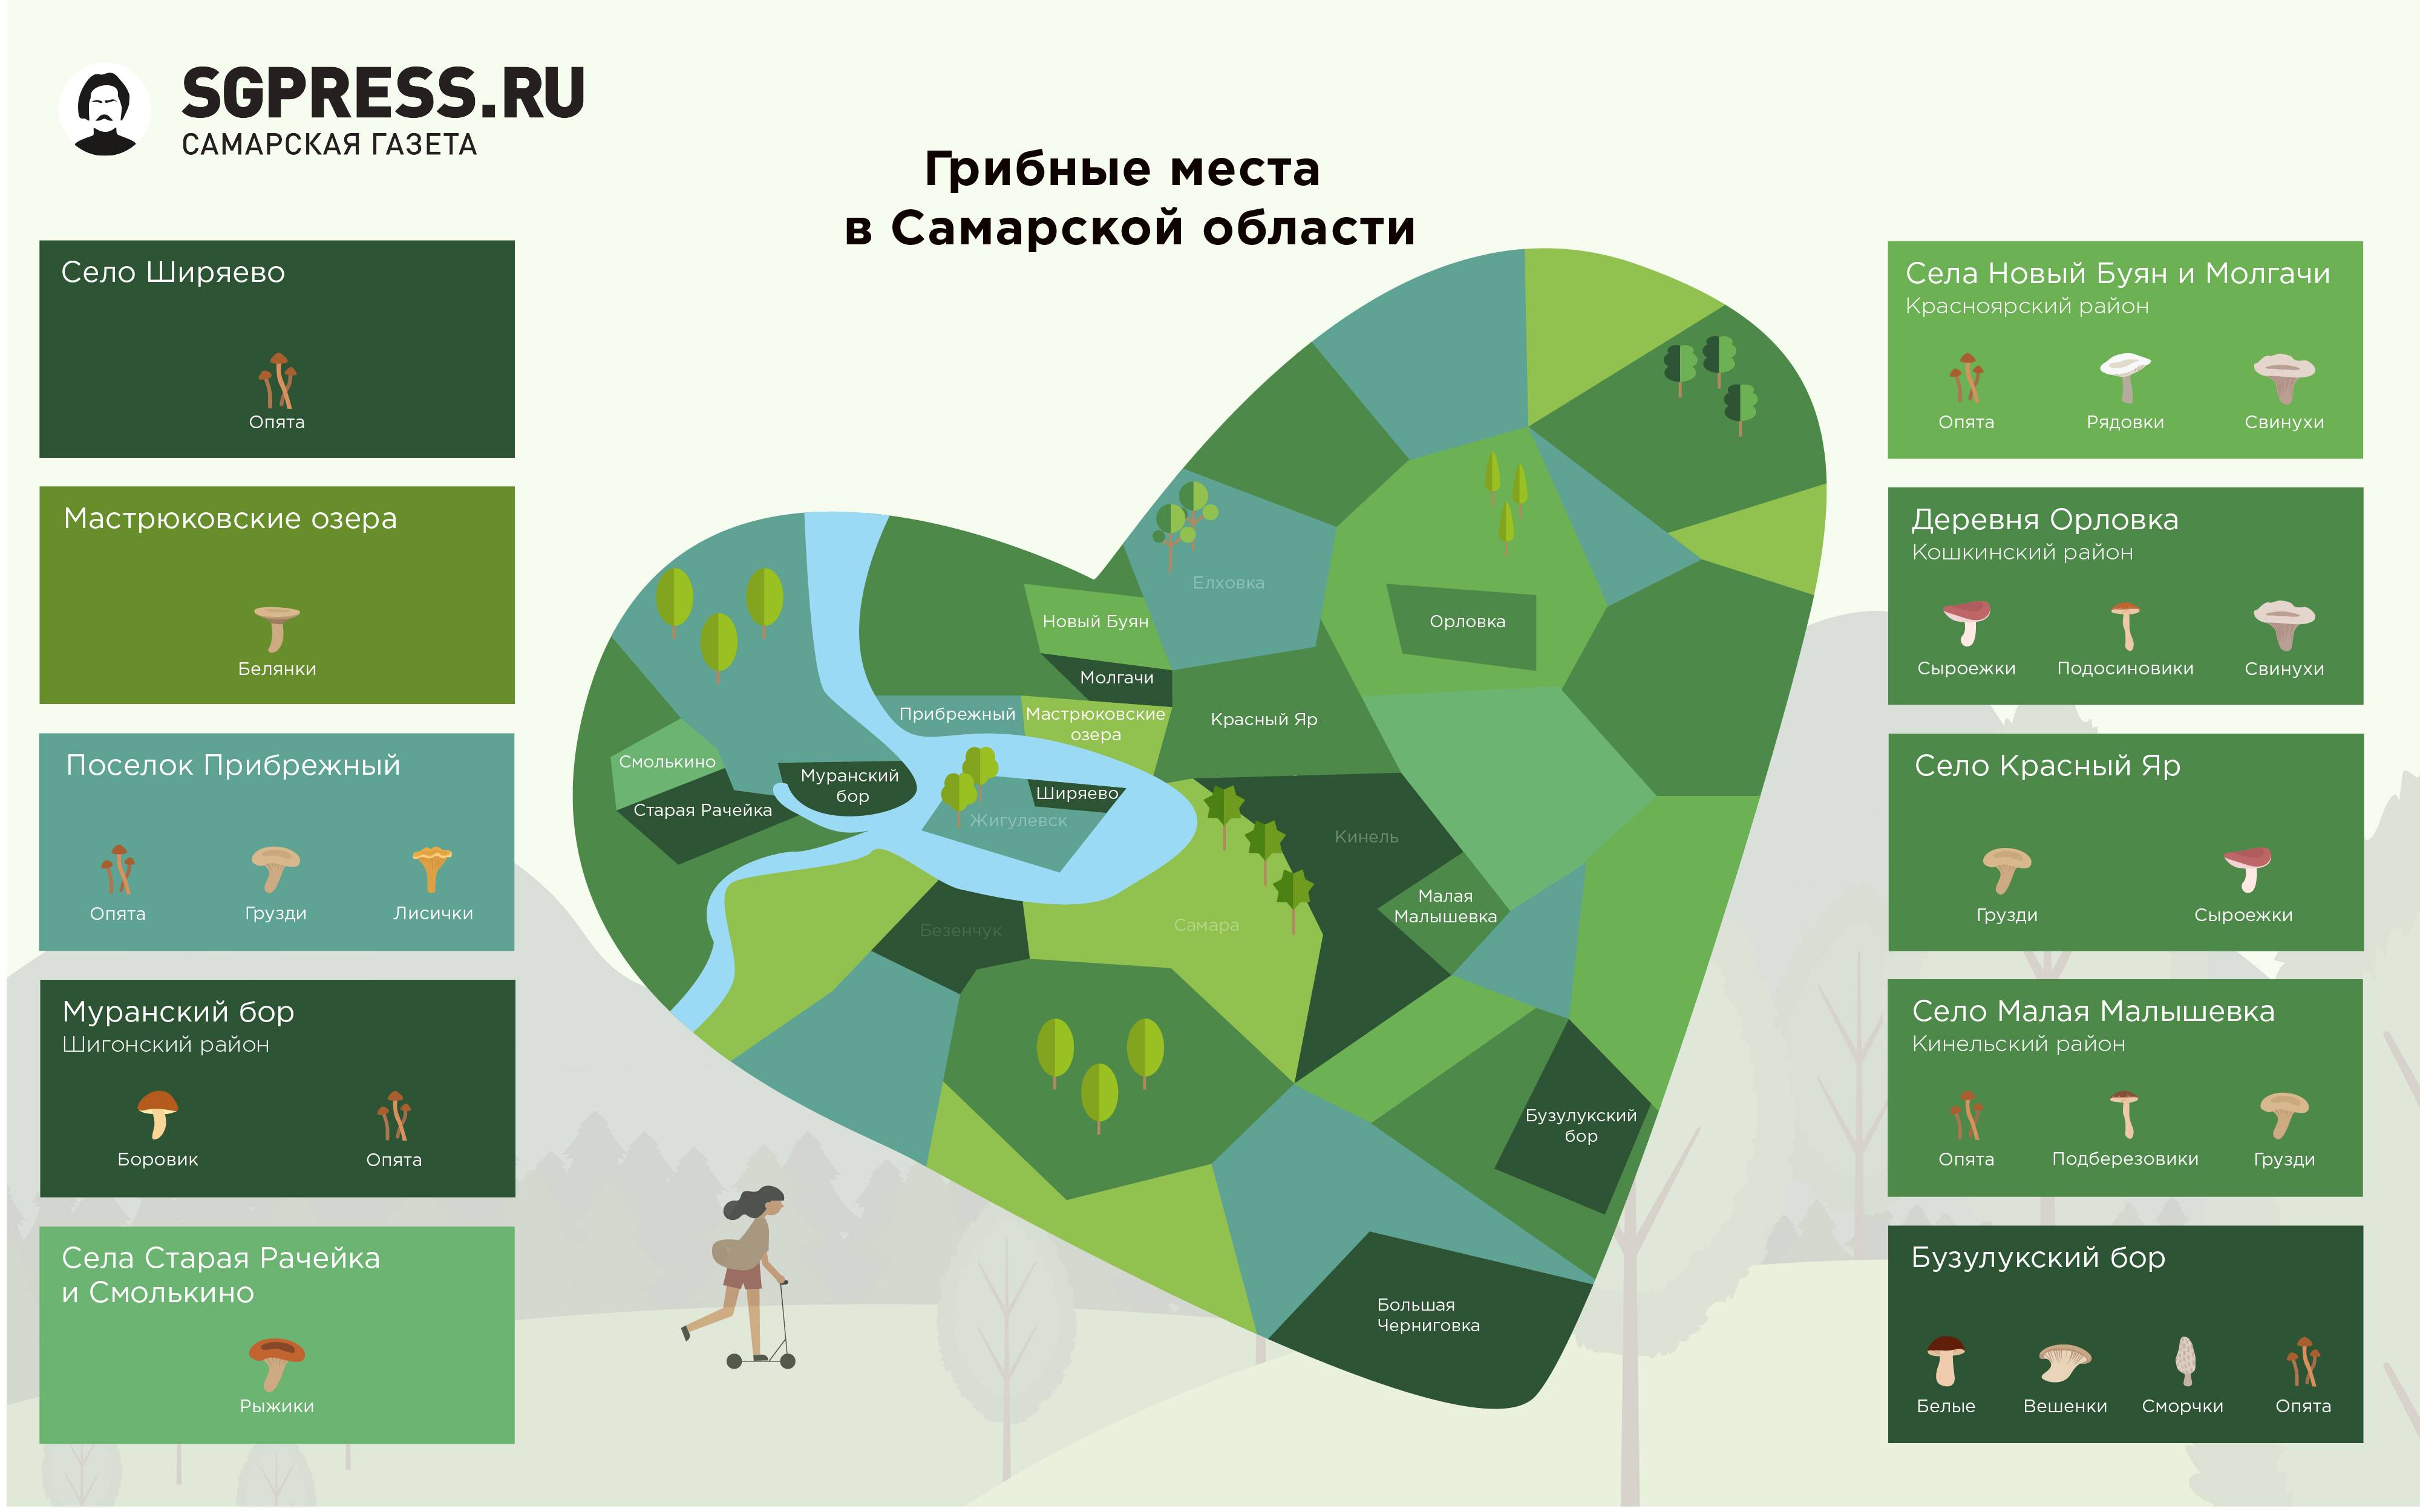 Грибы московской области 2021: когда и где собирать, сезоны и грибные места